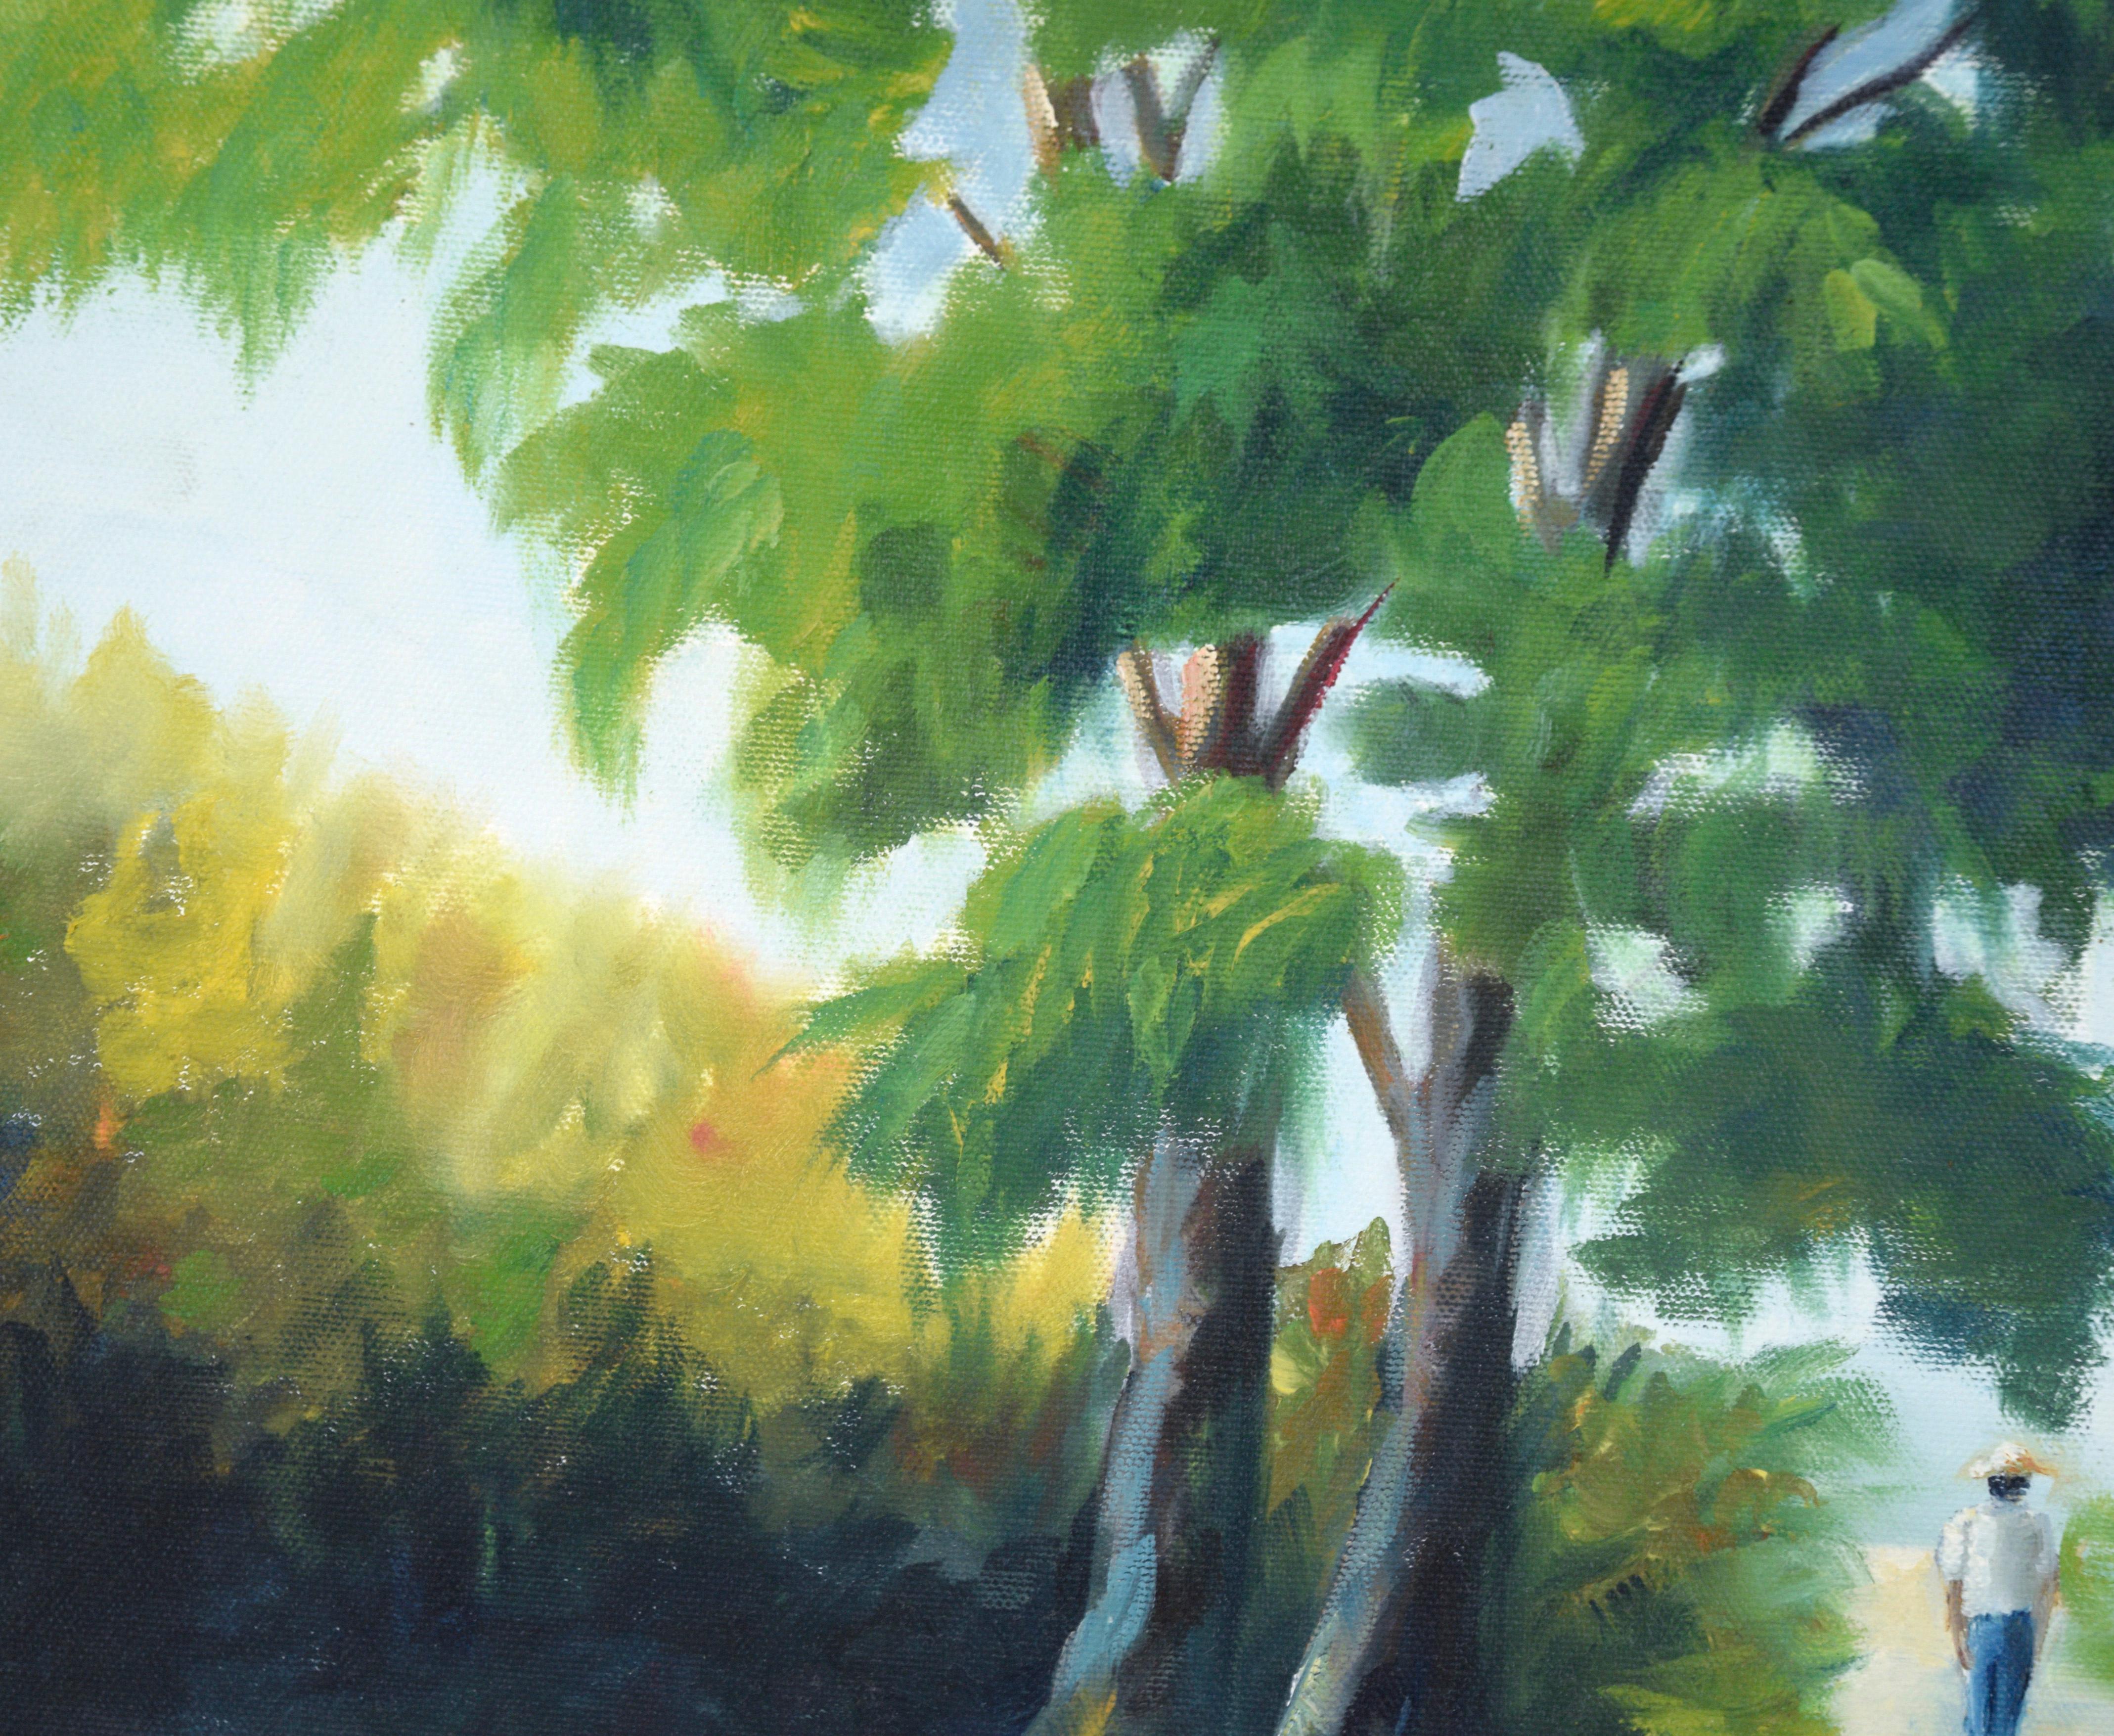 Walking the Path Under the Trees – Landschaft in Acryl auf Leinwand

Helle und farbenfrohe Landschaft von einem unbekannten Künstler (20. Jahrhundert). Zwei große Bäume stehen im Mittelpunkt dieses Werks mit üppigem Grün und tiefen Schatten. Die